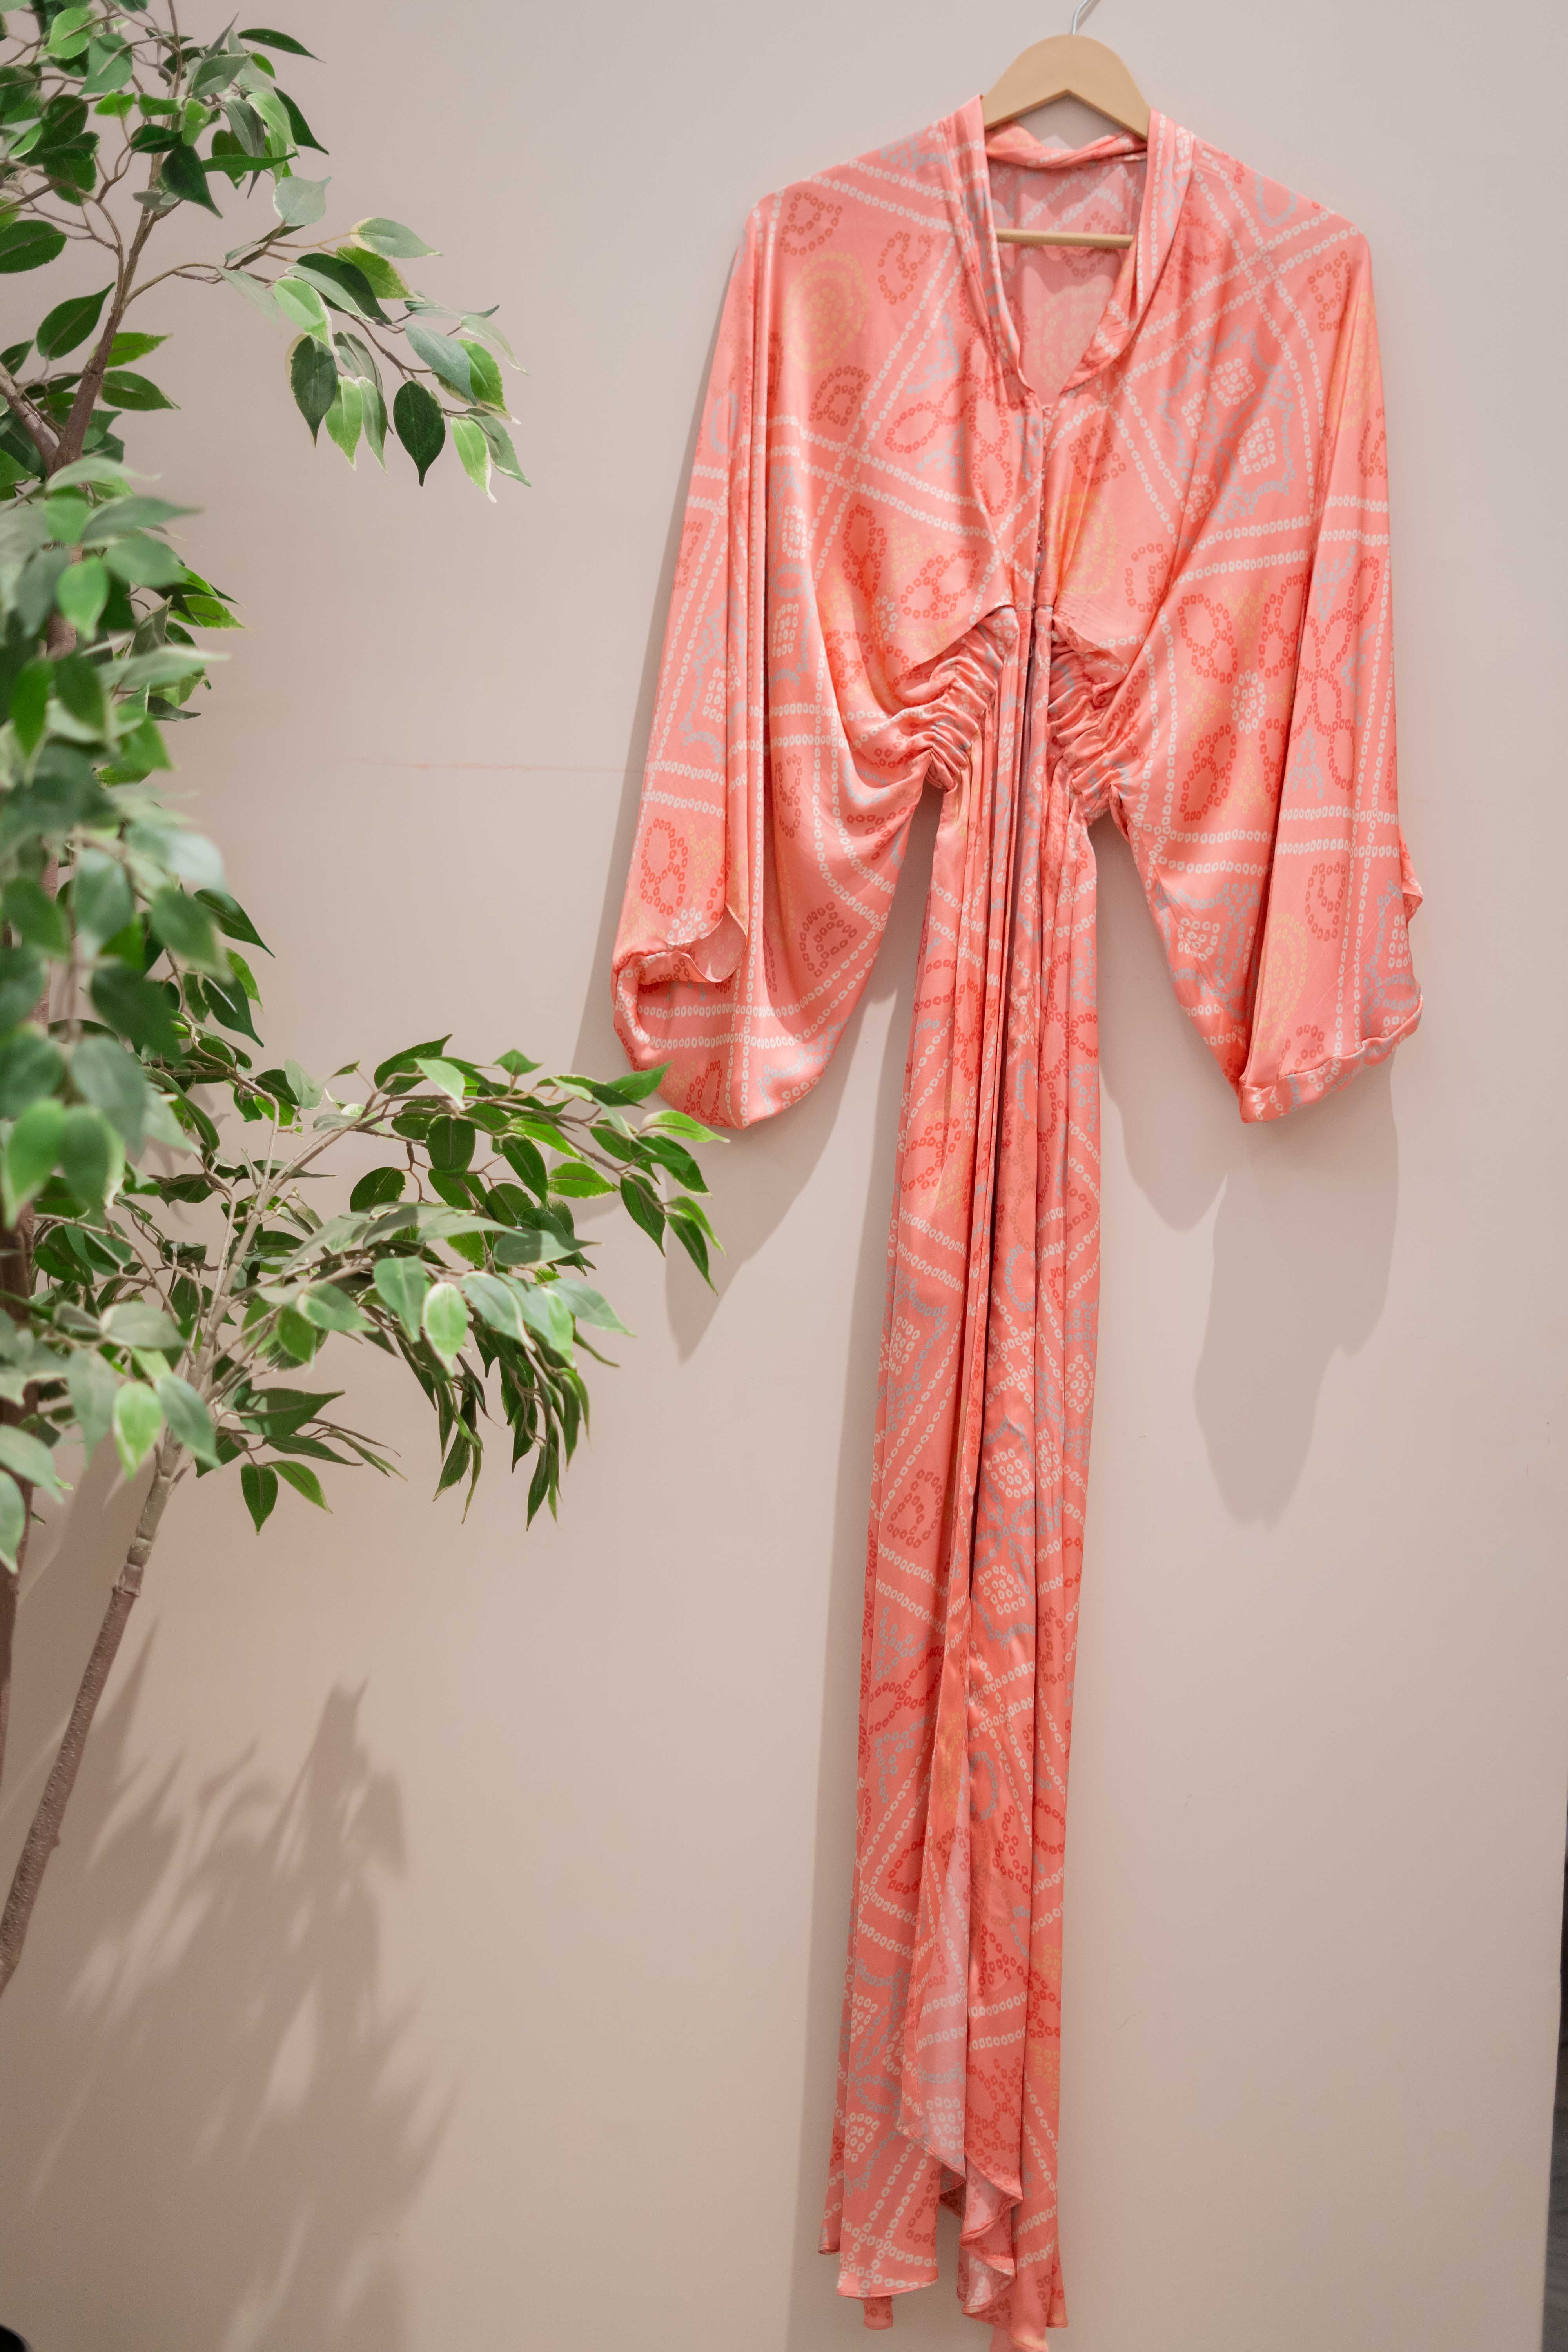 DS - Coral bandhini dress